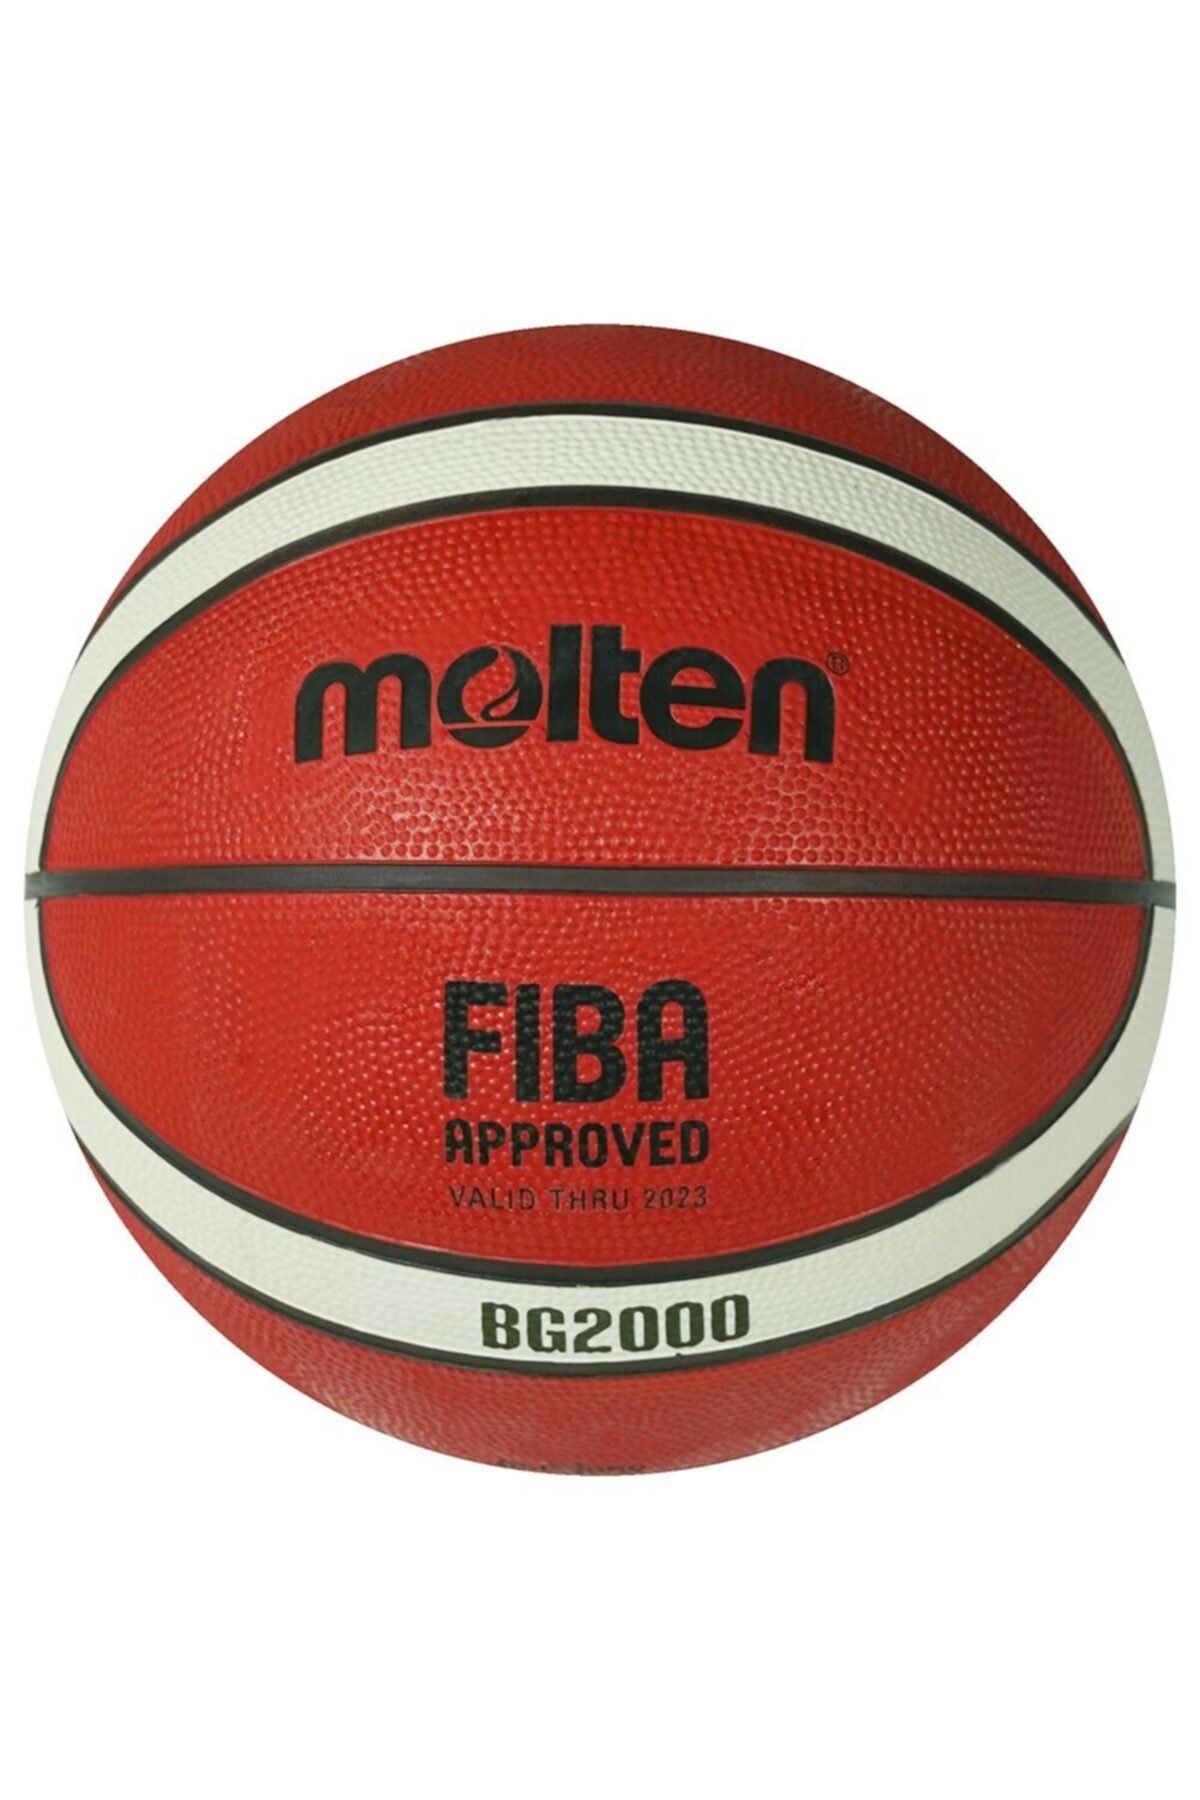 Molten B7g2000 Basketbol Topu No:7